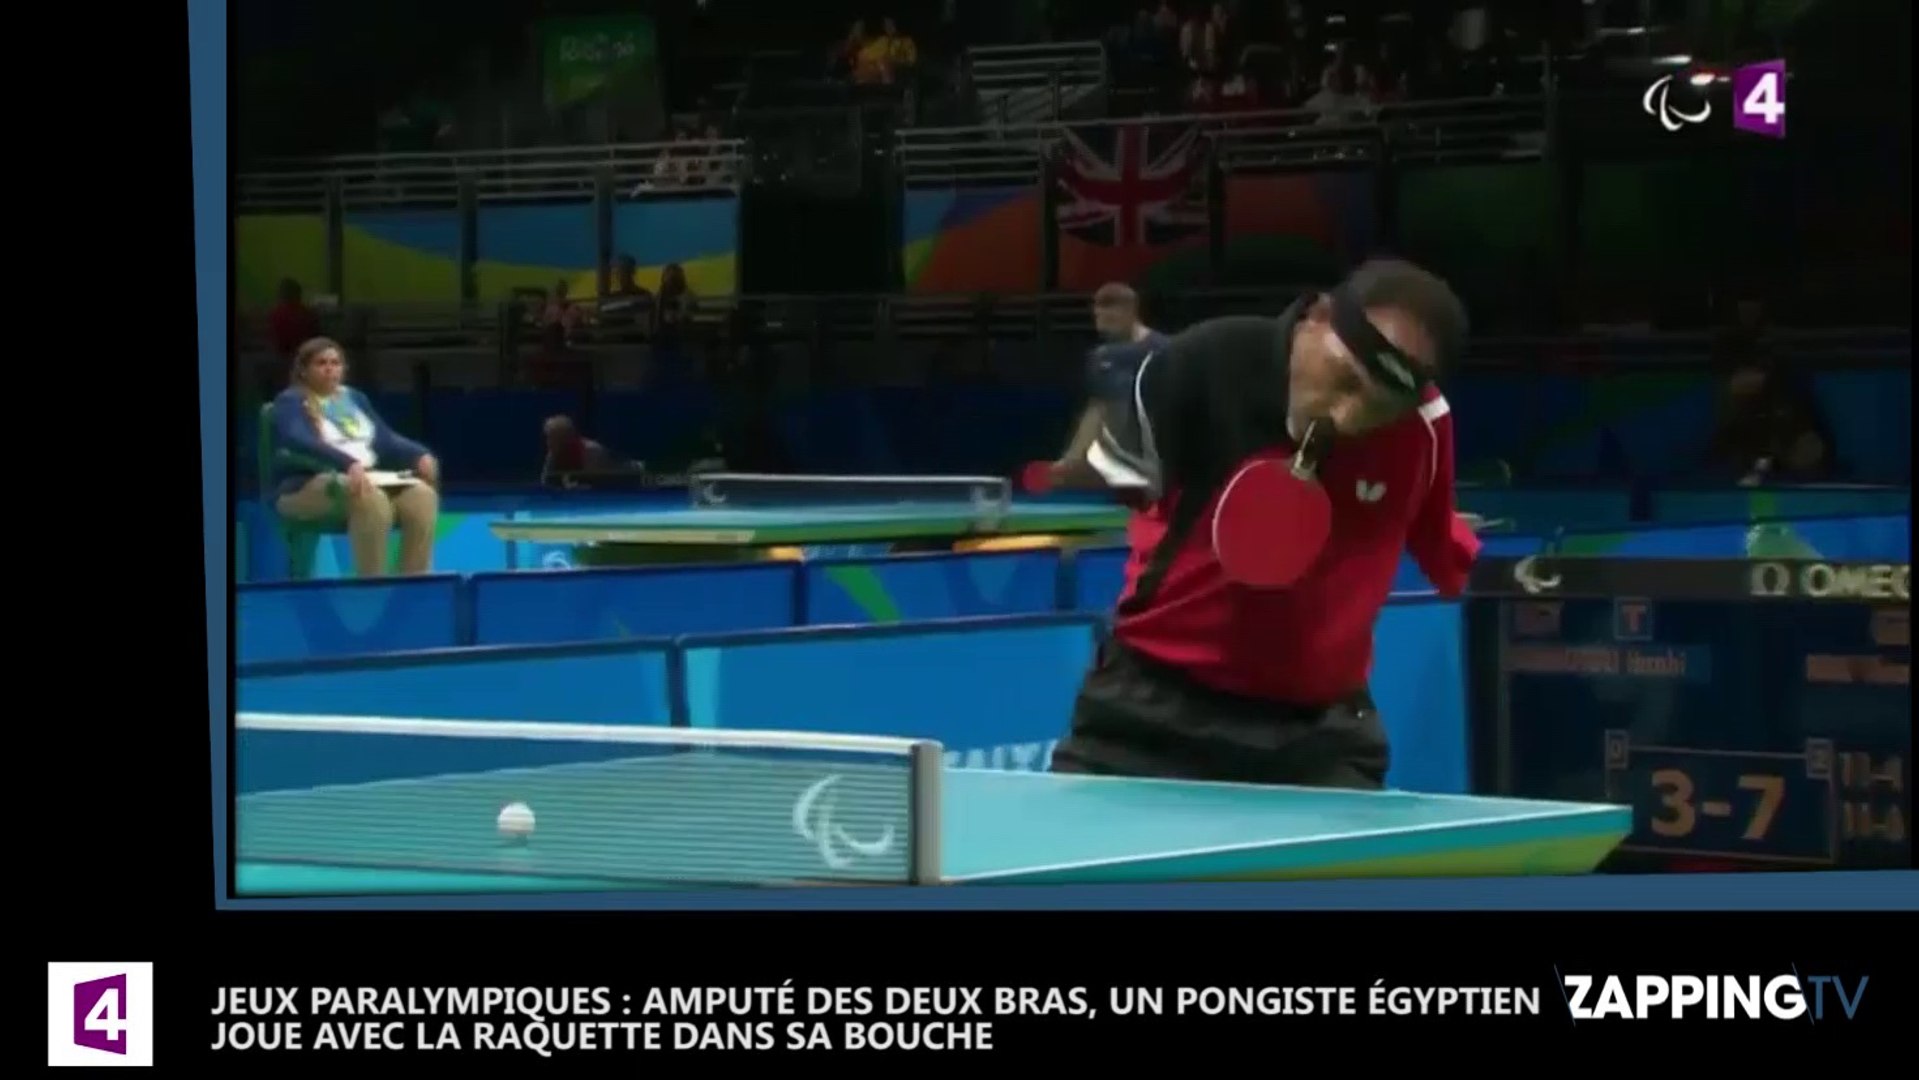 Jeux paralympiques. Tennis de table : amputé des deux bras, Ibrahim Hamato  entretient la flamme